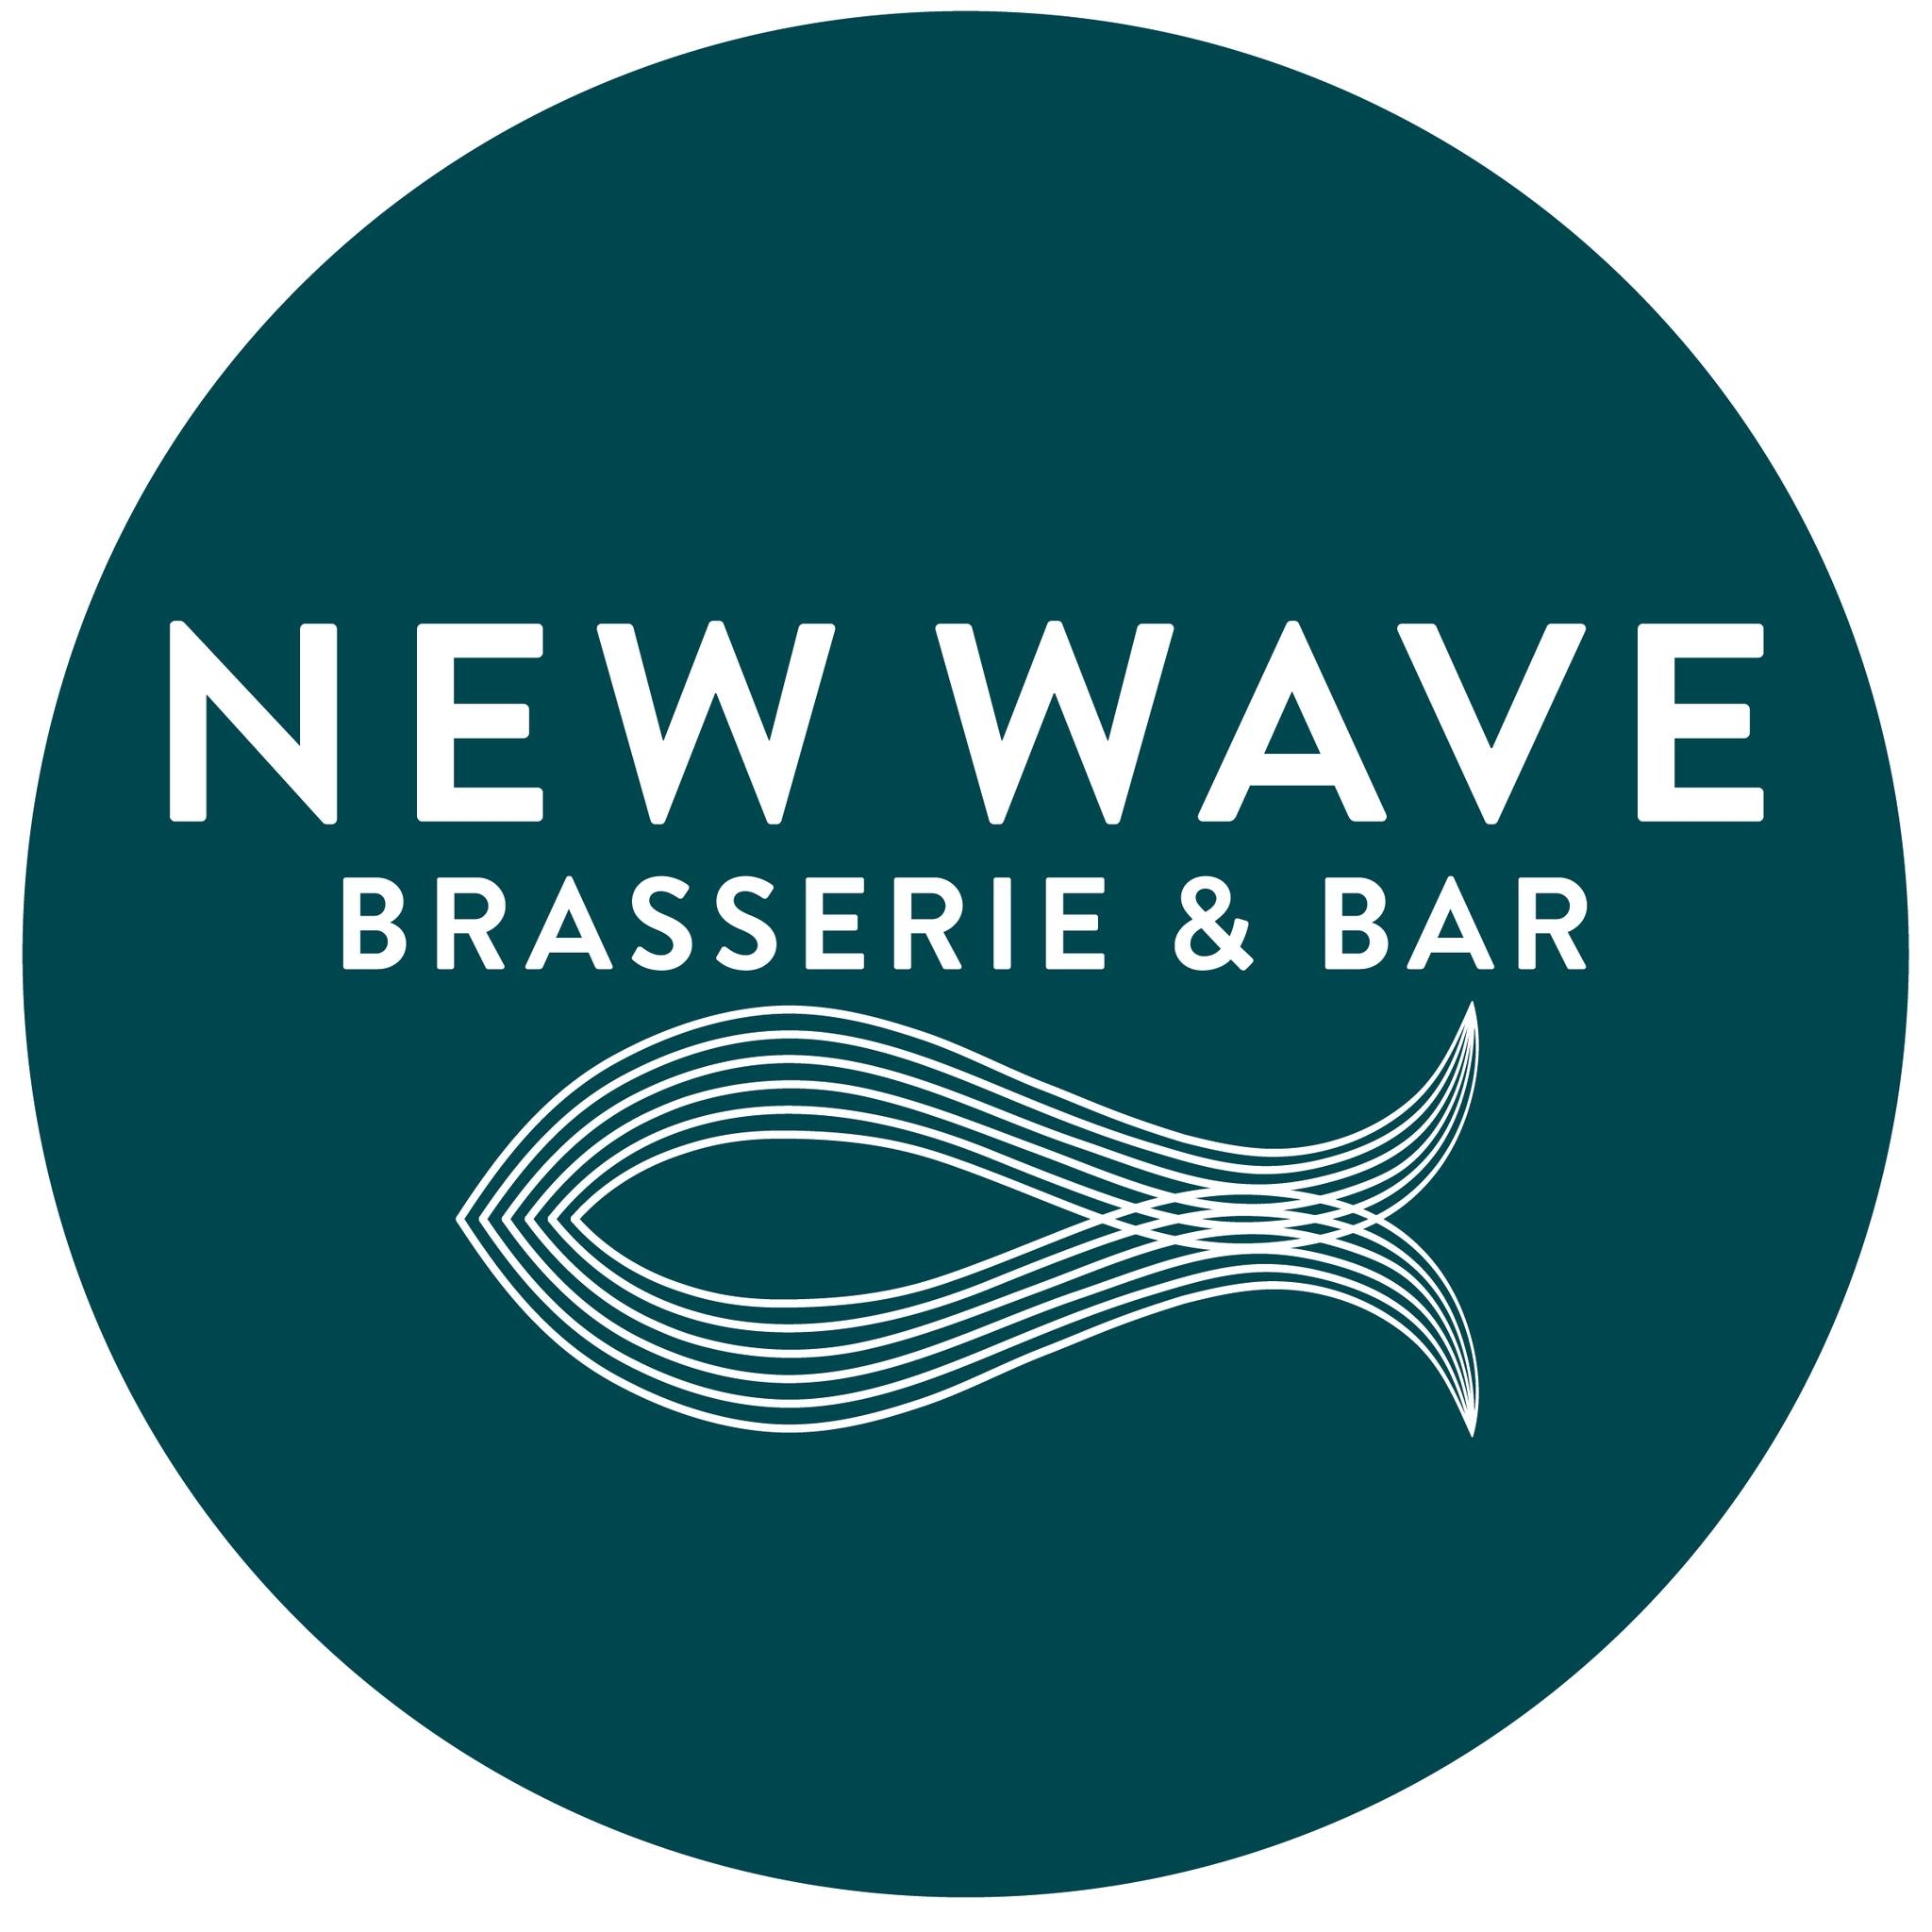 New Wave Brasserie, Bar & Fish Market